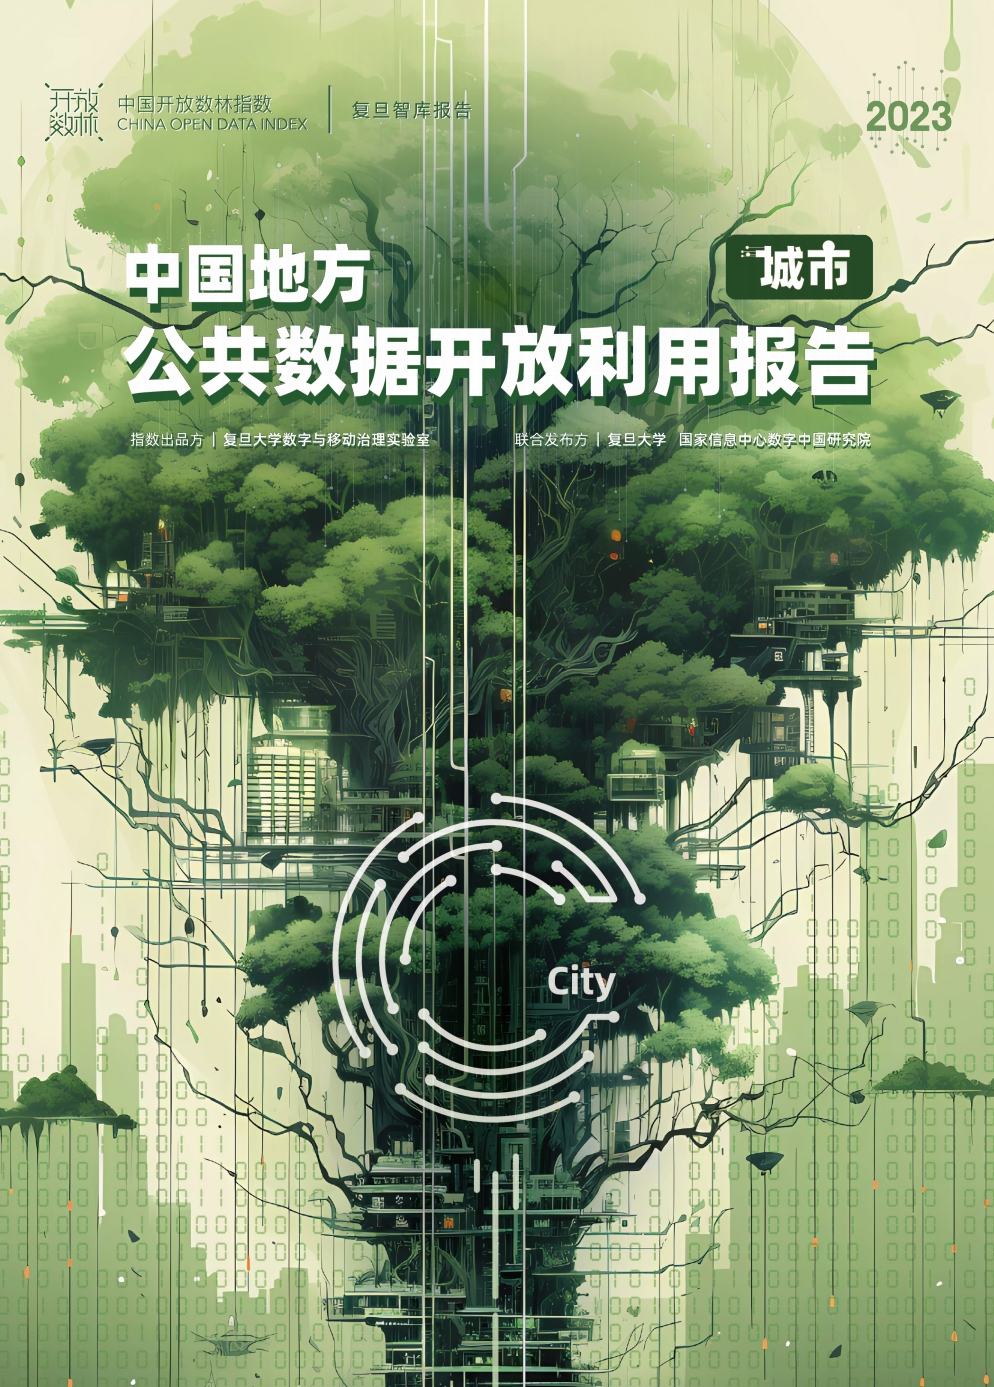 中国地方公共数据开放利用报告
城市